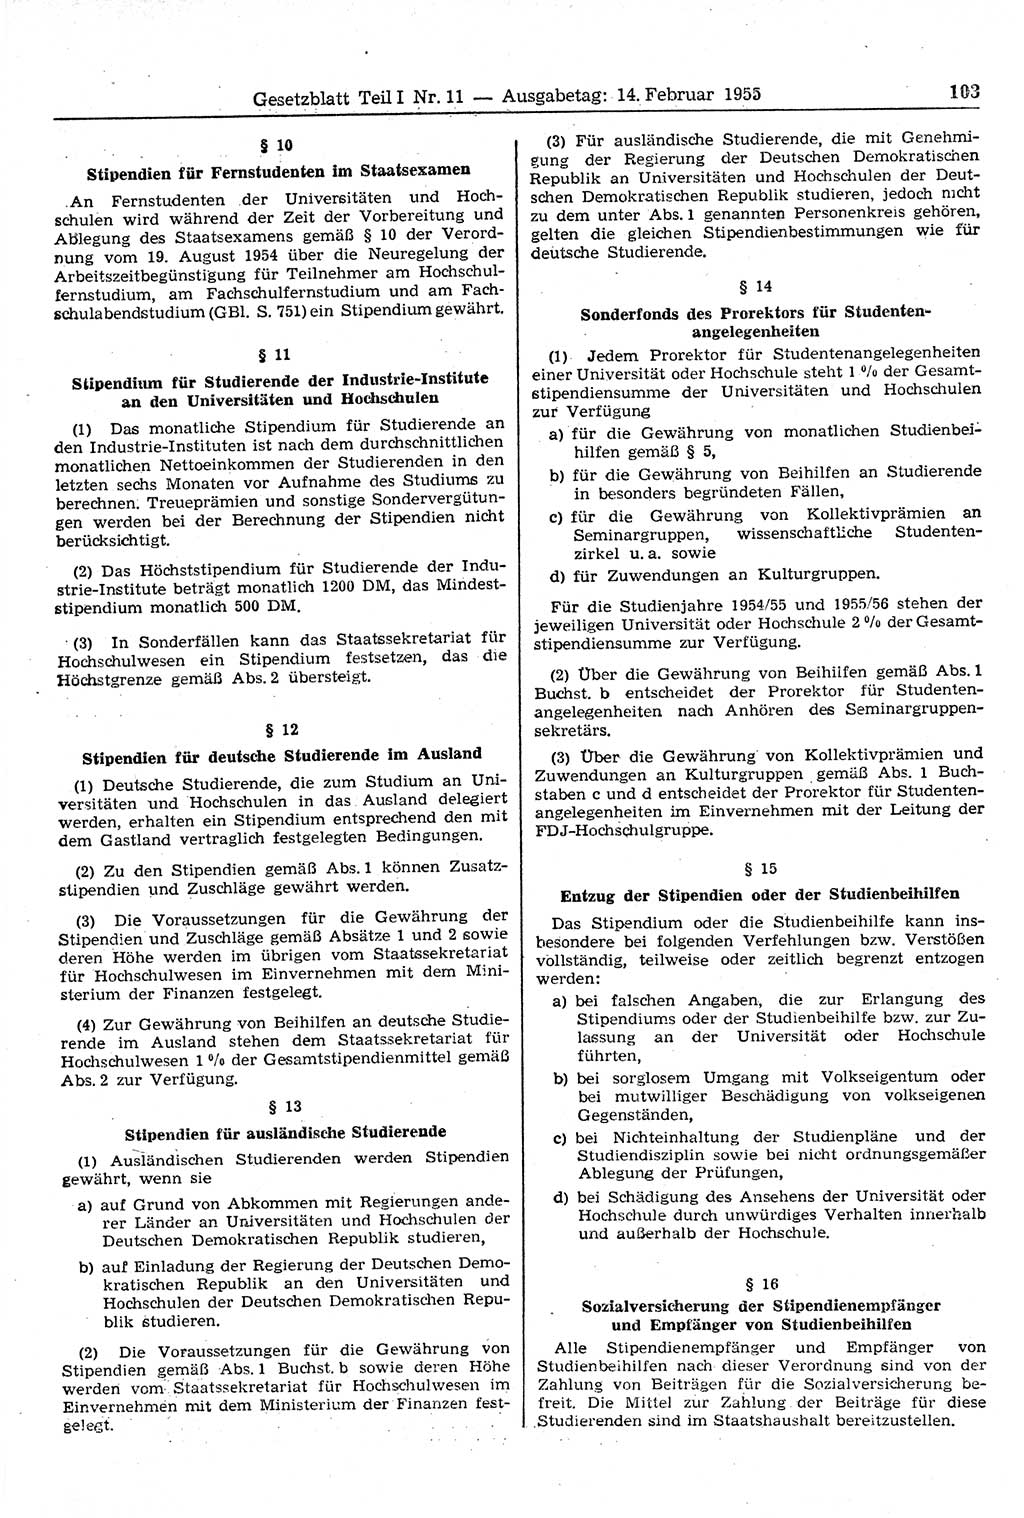 Gesetzblatt (GBl.) der Deutschen Demokratischen Republik (DDR) Teil Ⅰ 1955, Seite 103 (GBl. DDR Ⅰ 1955, S. 103)